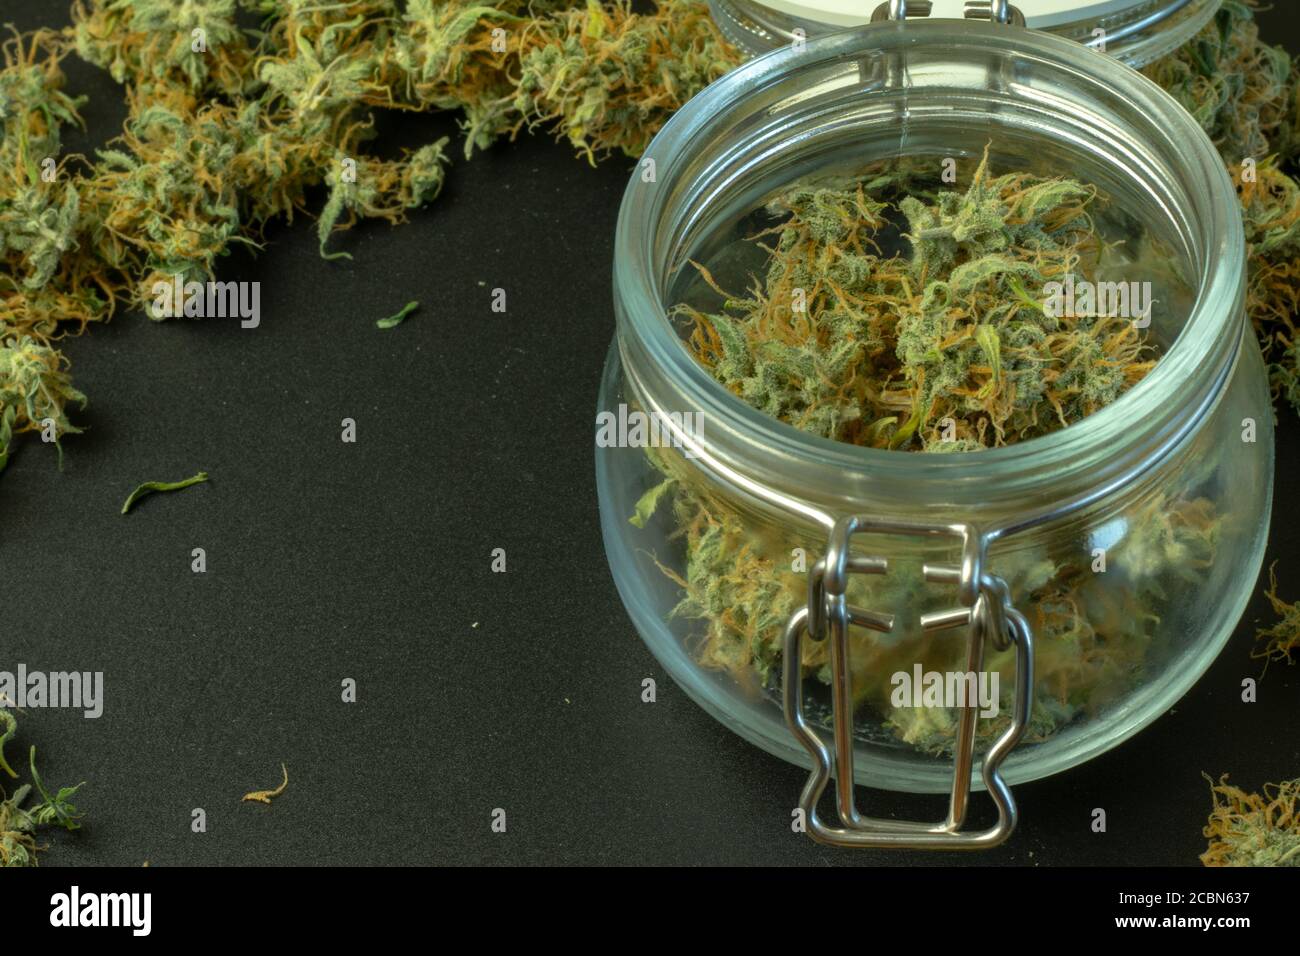 Offenes Glas mit Marihuana Knospen aus der Nähe. Cannabis Hintergrund Kopie Raum Stockfoto